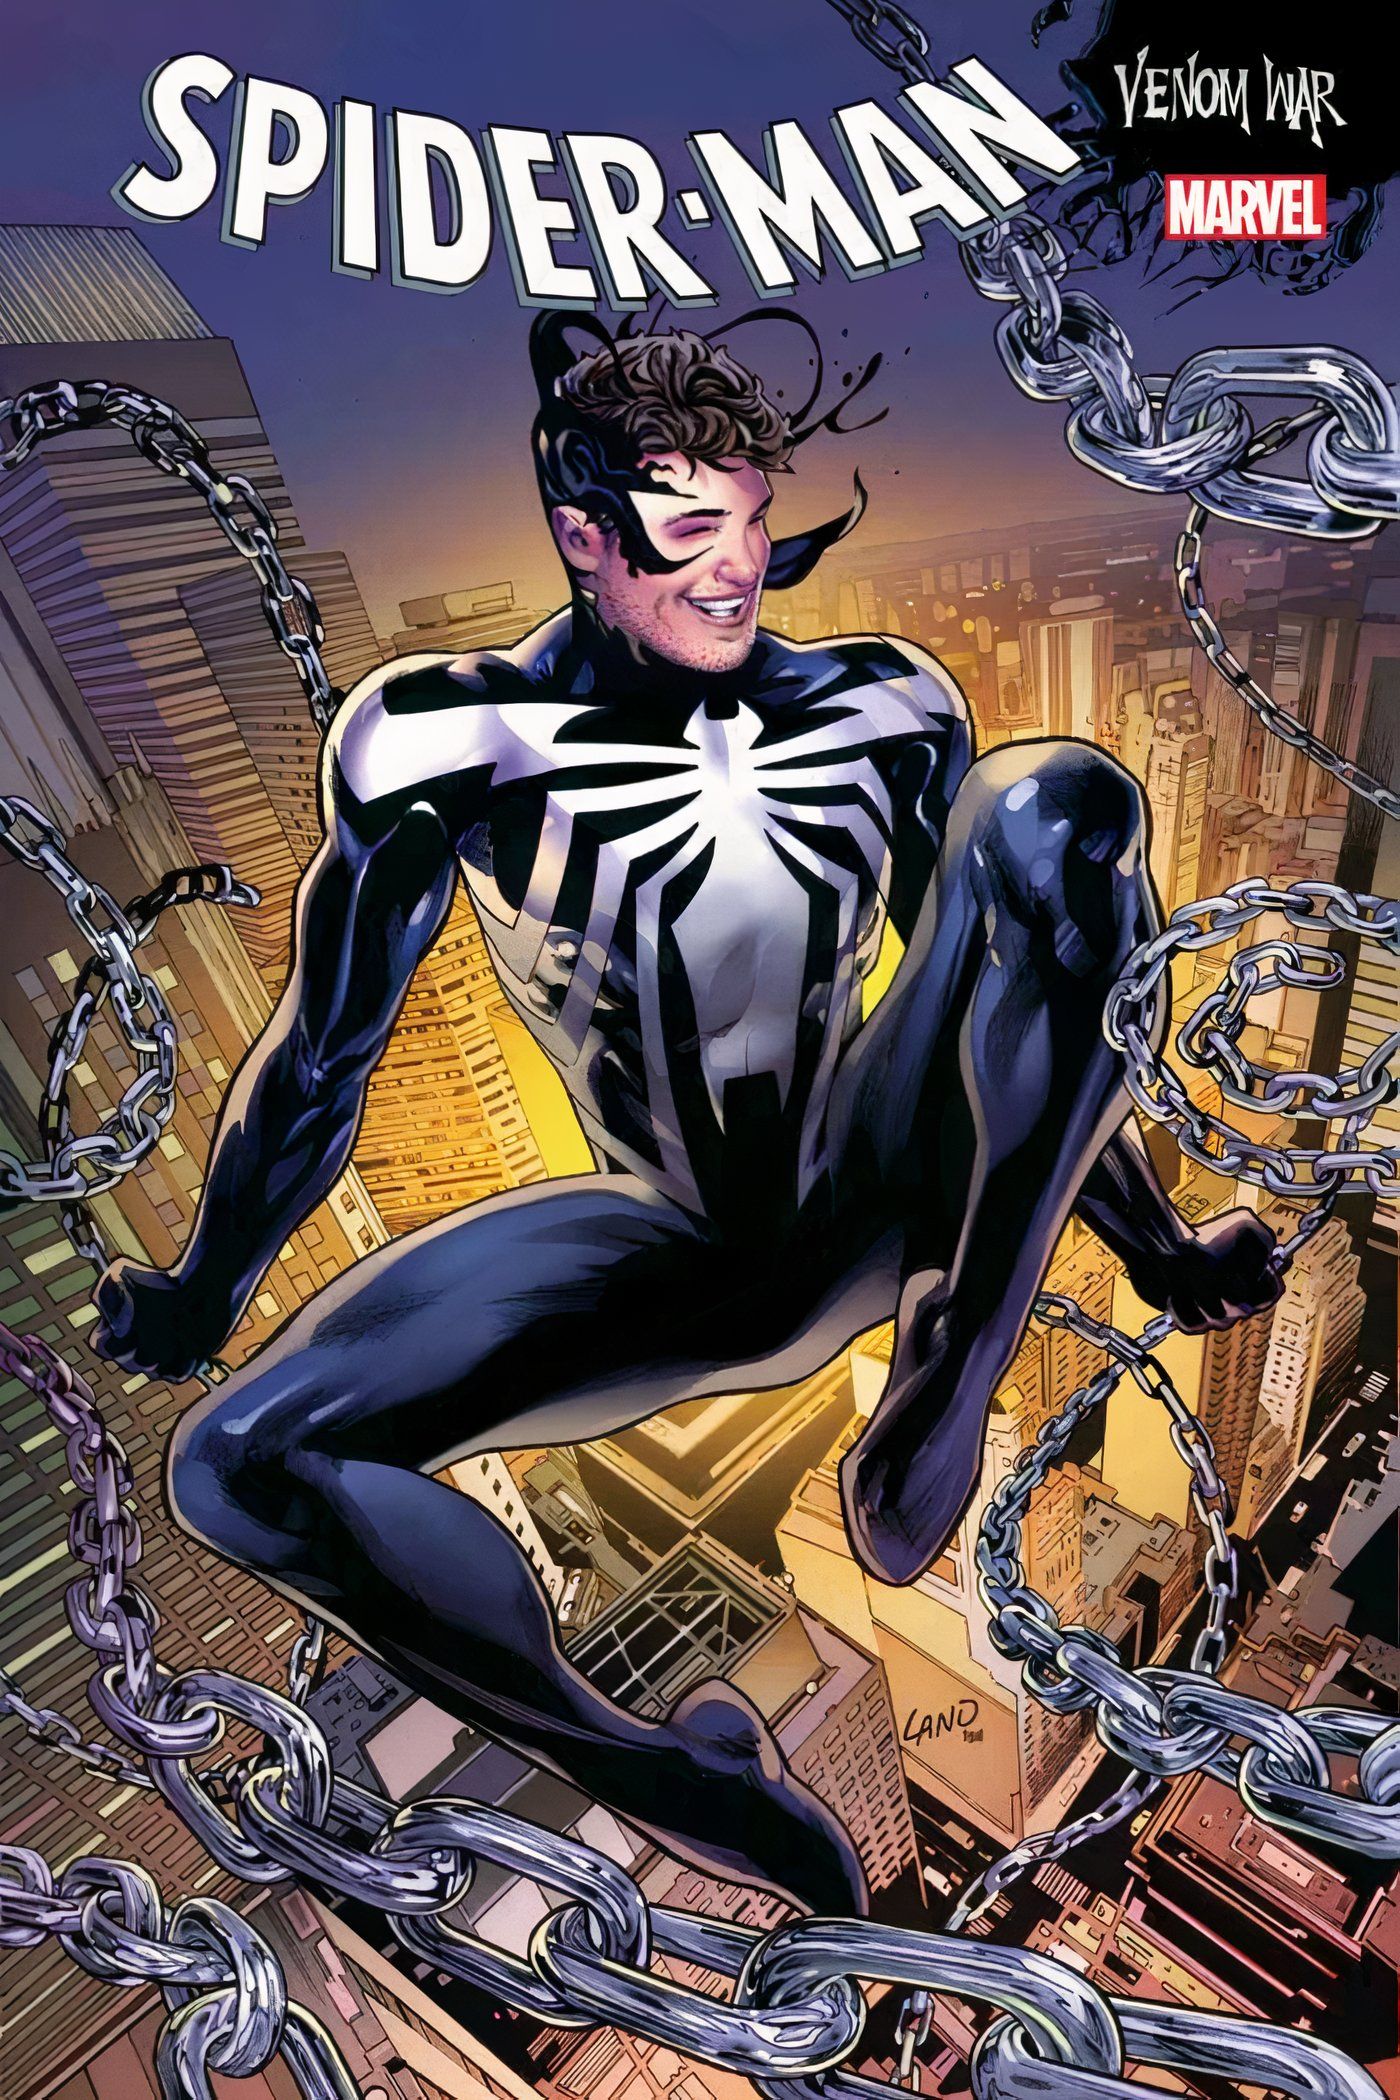 Venom War: Spider-Man #1 cover featuring Black-Suit Spider-Man.